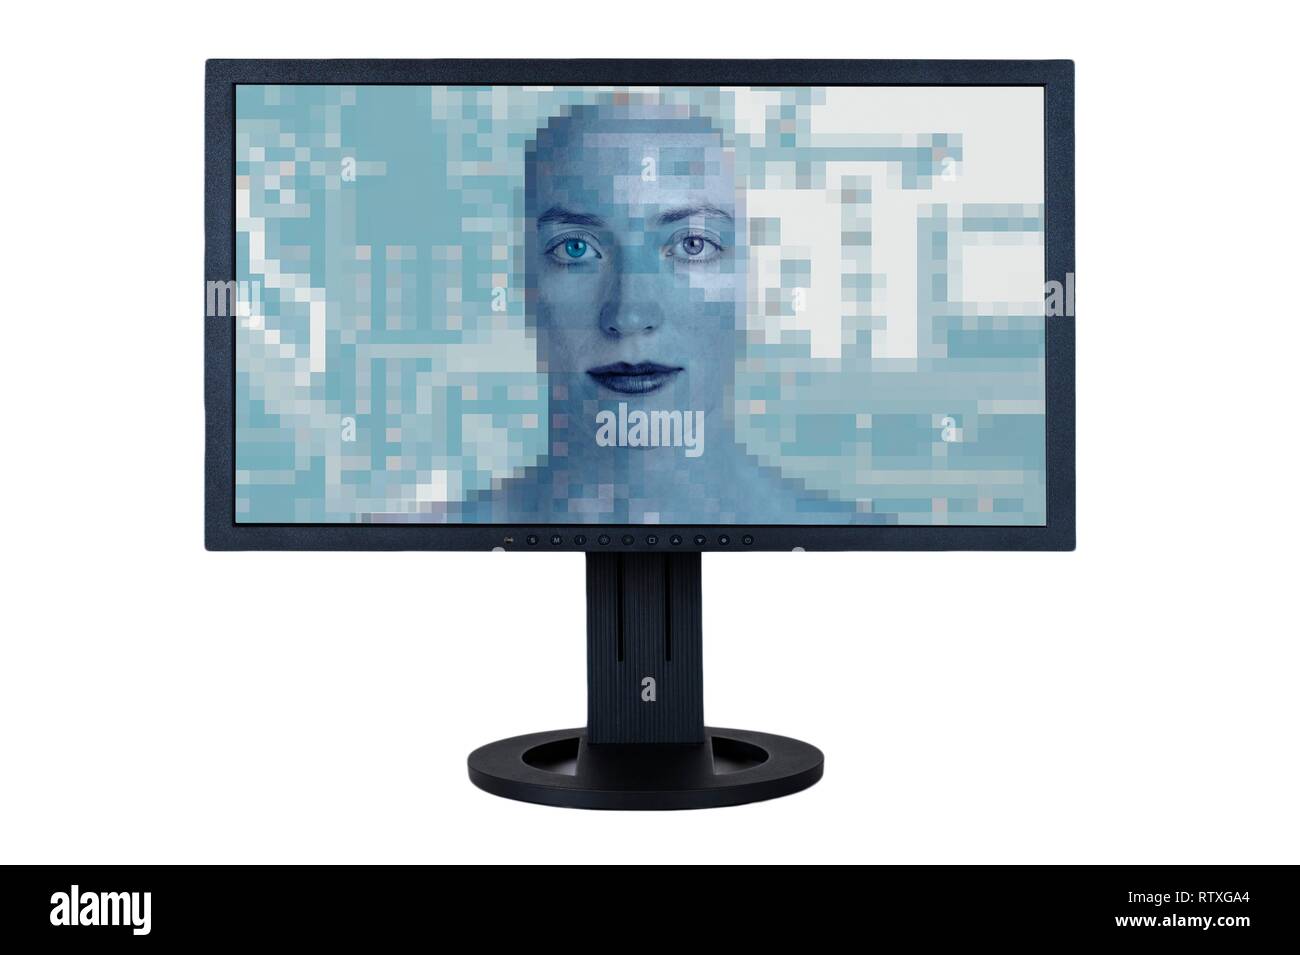 Gli occhi a guardare fuori di schermo di computer con sovrapposta la scheda circuitale. Immagine concettuale della sorveglianza di internet e la sicurezza informatica. Foto Stock